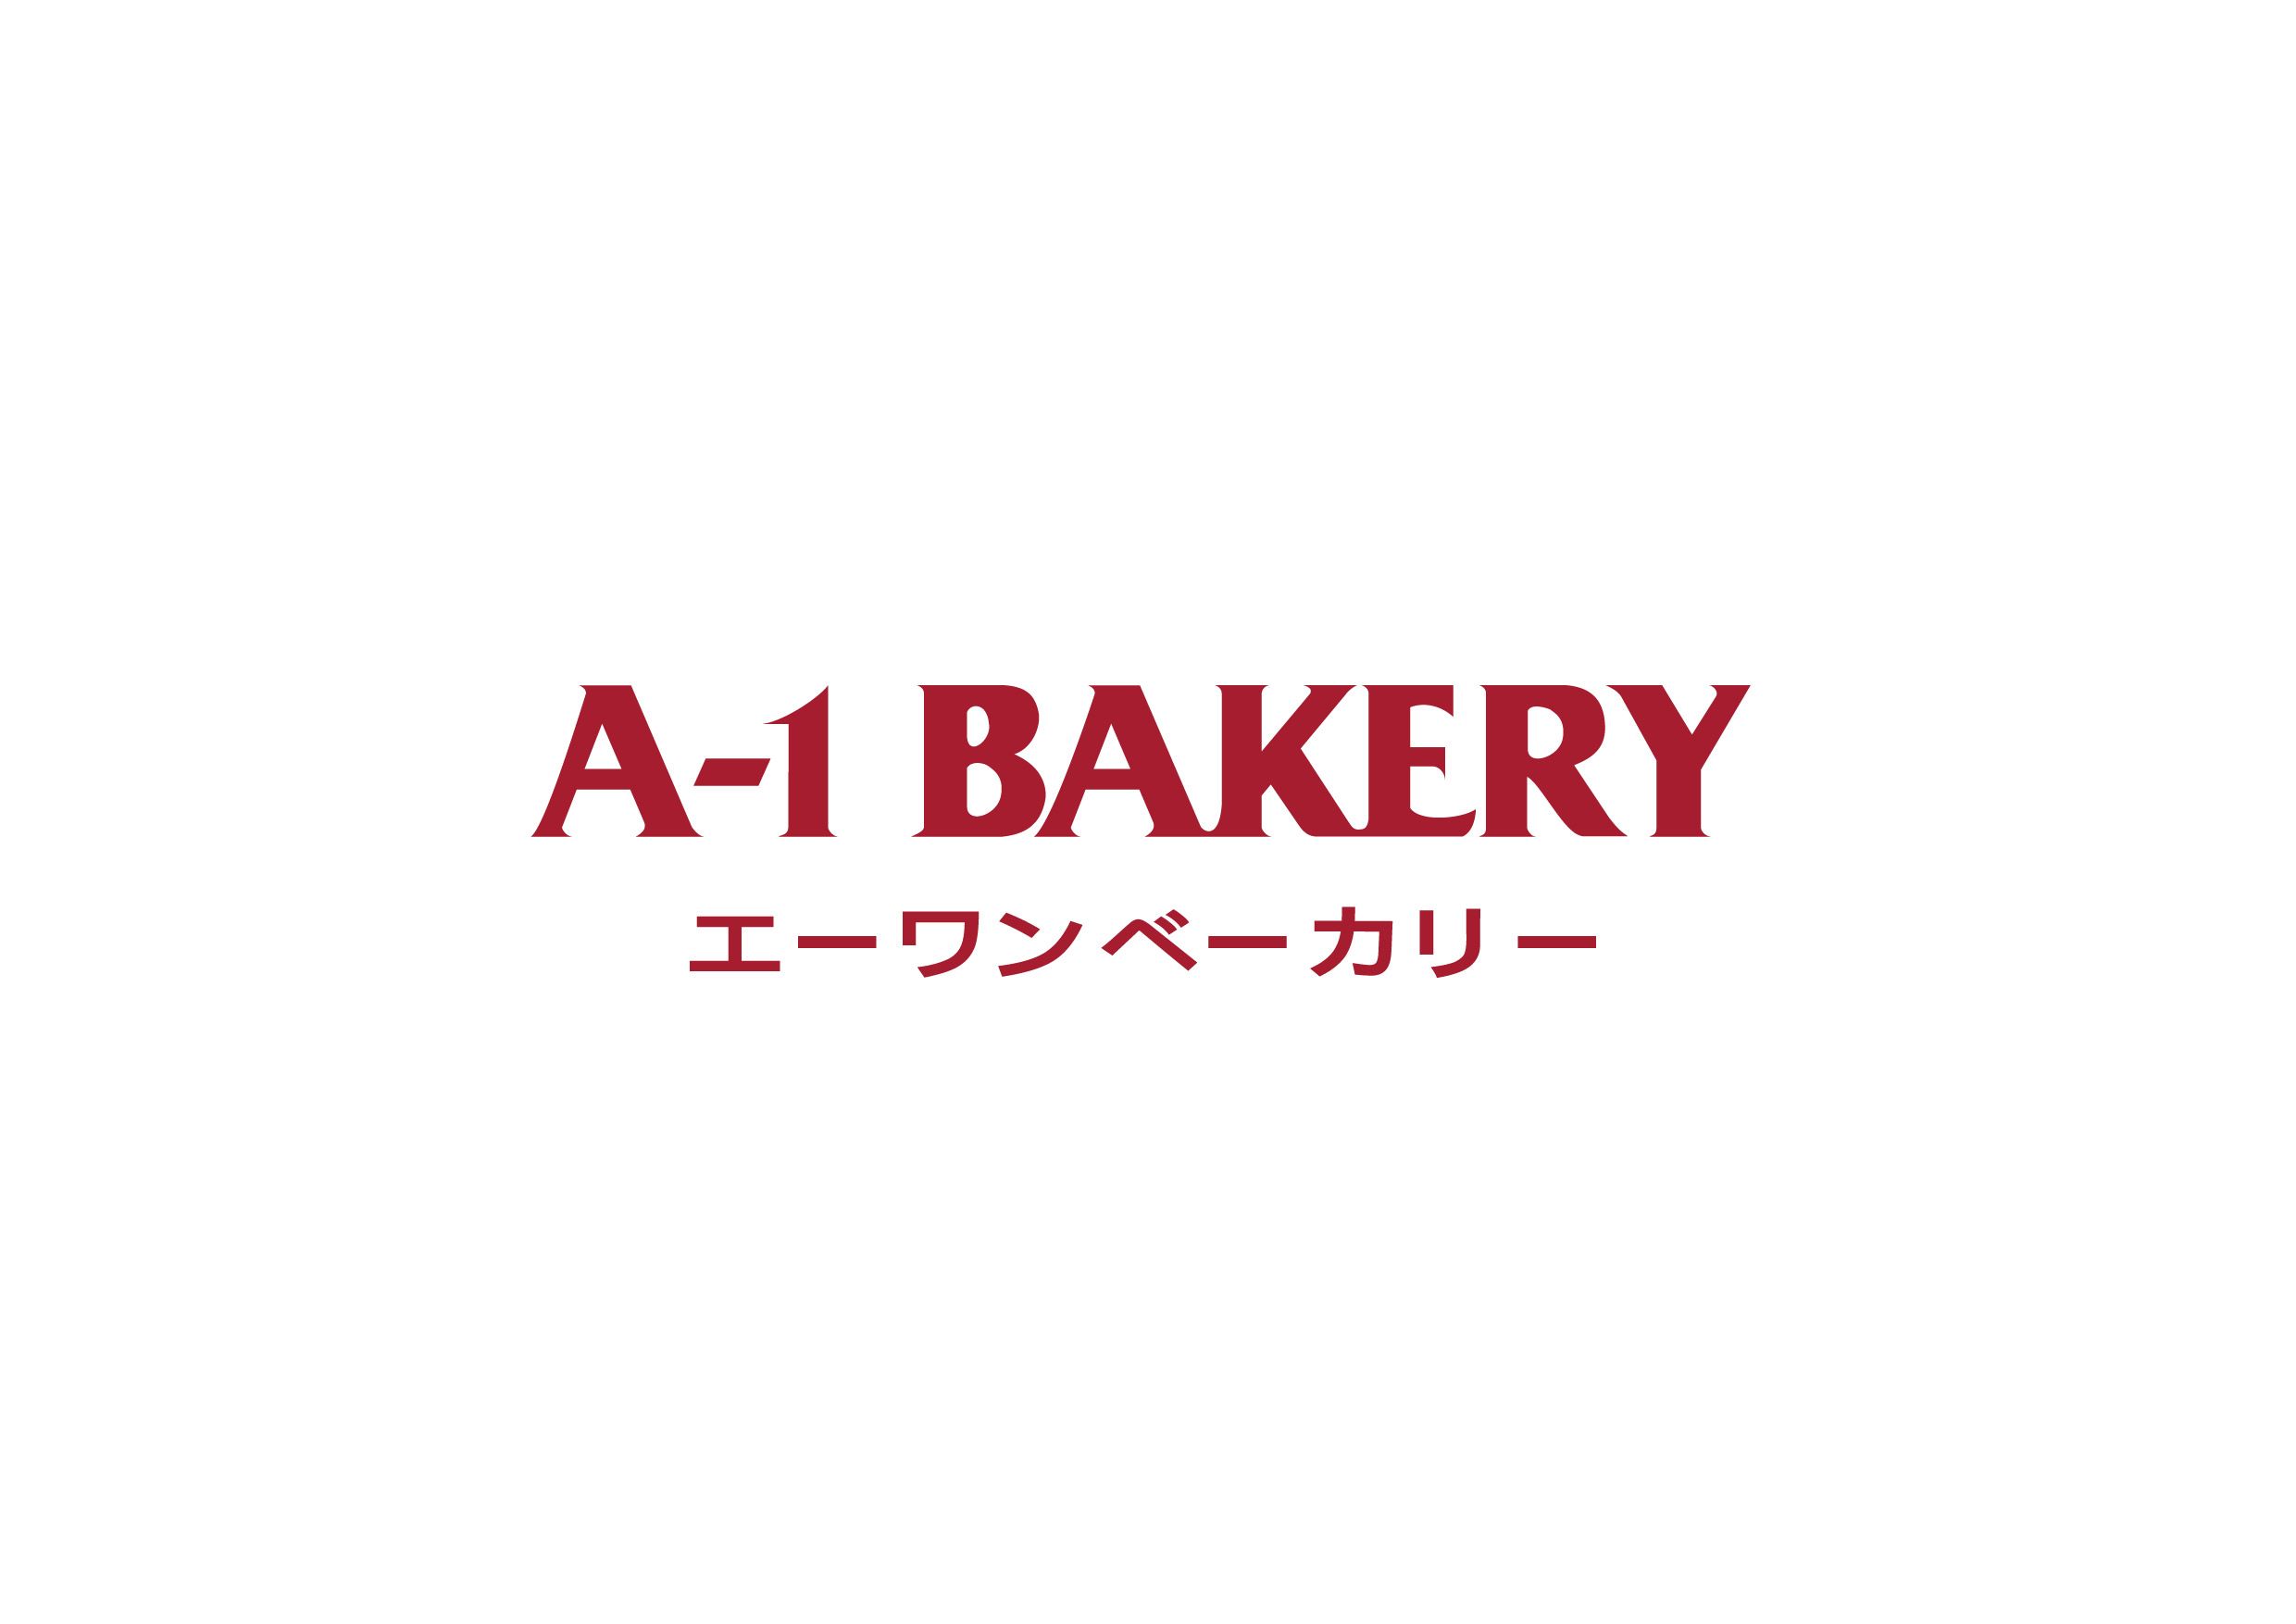 A-1 Bakery 英王麵包 